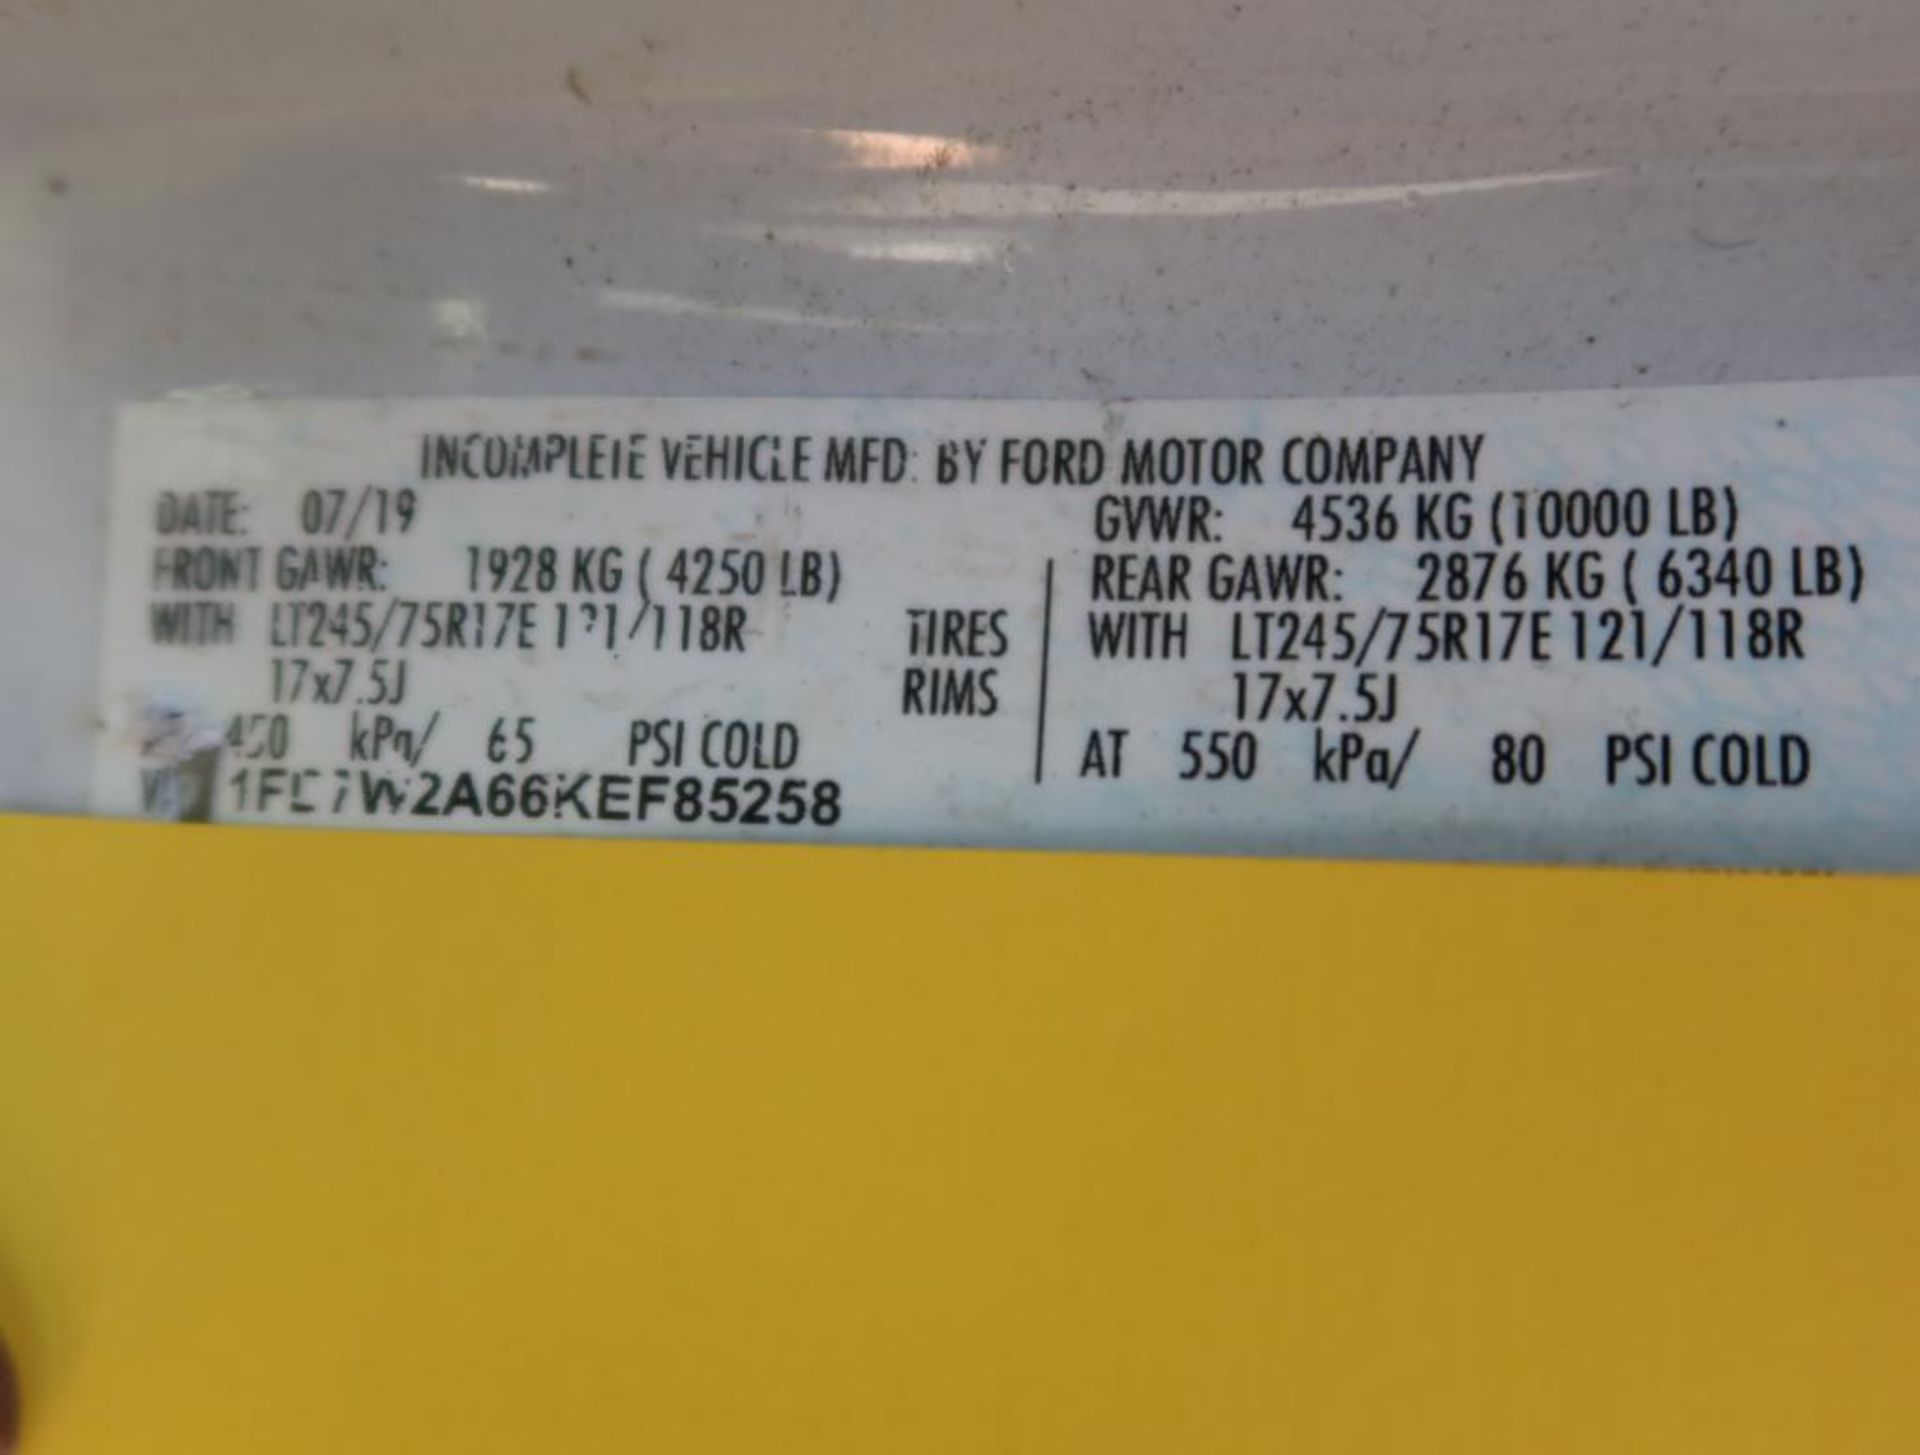 2019 Ford F-250 4 Door Service Body w/Ladder Rack, Gas, License# NPX-J97, VIN 1FD7W2A66KEF85258, 56, - Bild 8 aus 8